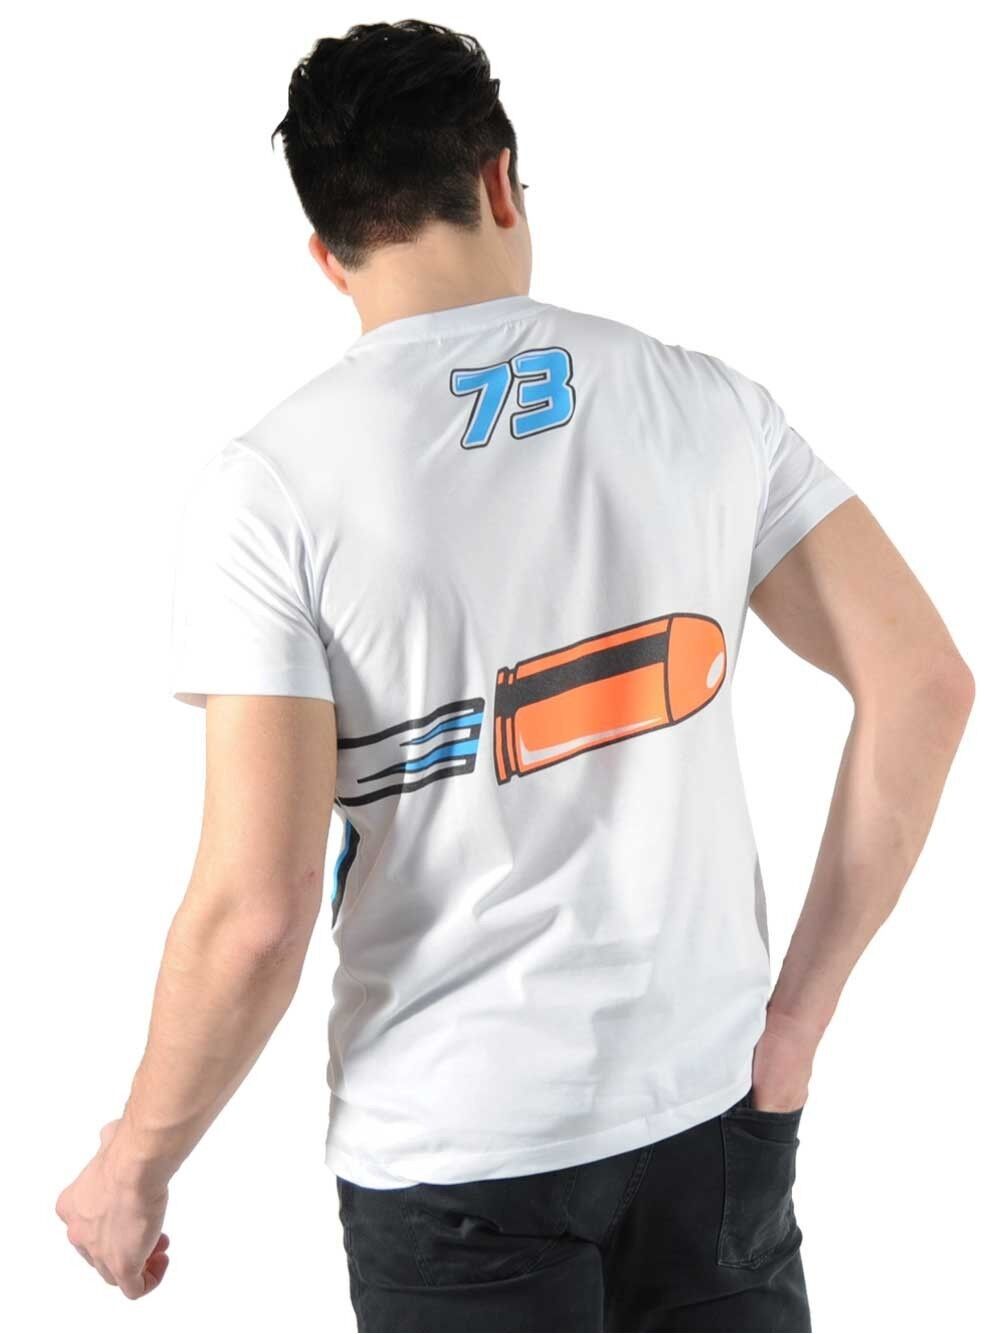 New Official Alex Marquez Pistolero T Shirt - 16 32004